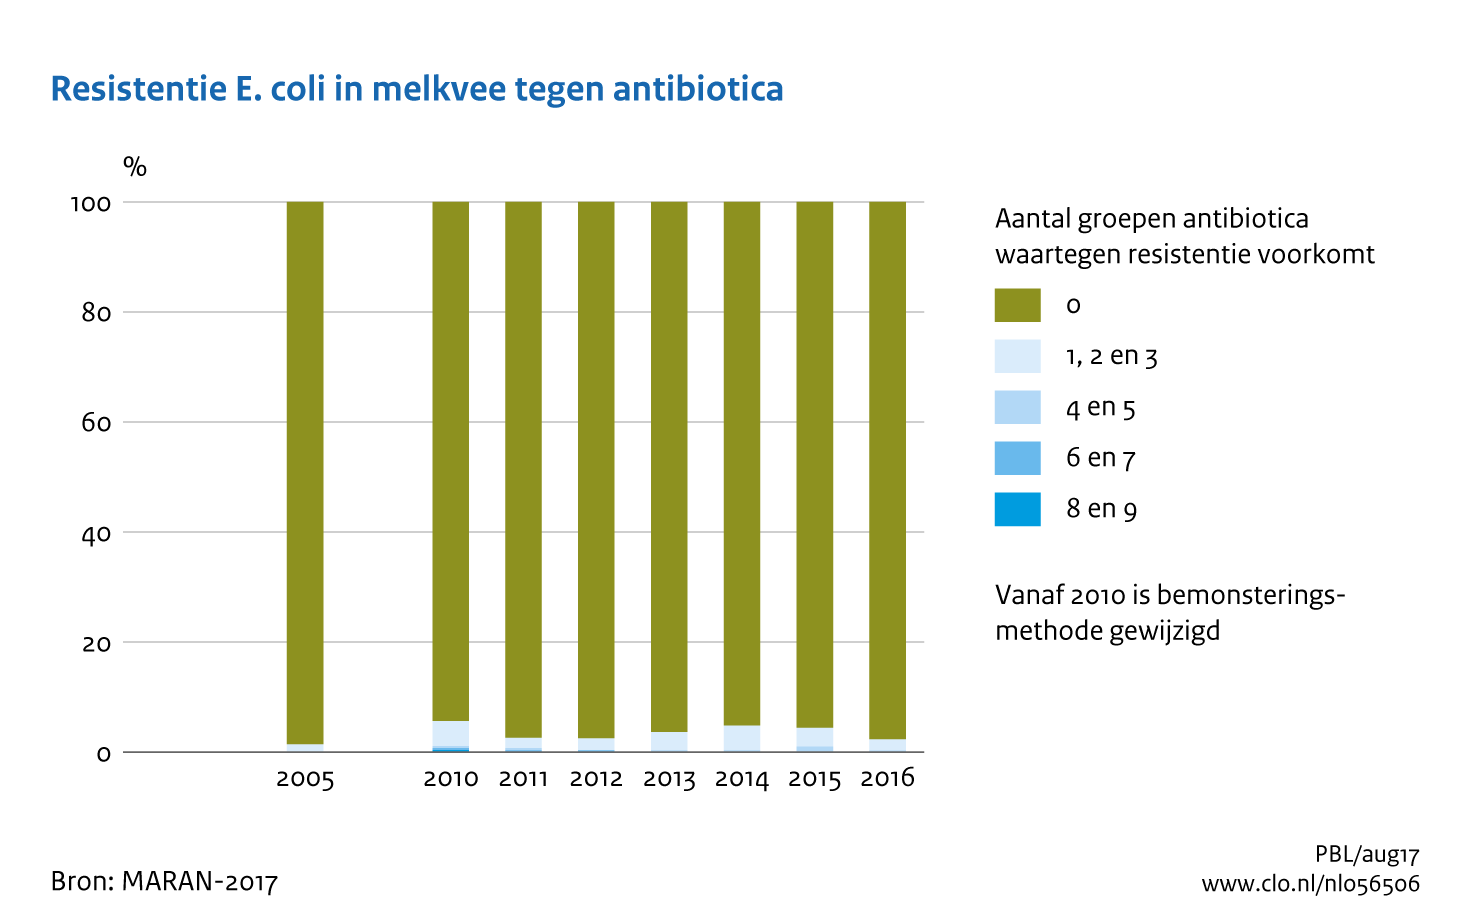 Figuur Resistentie E.coli in melkvee tegen antibiotica. Meervoudige resistentie tegen antibiotica neemt af.. In de rest van de tekst wordt deze figuur uitgebreider uitgelegd.